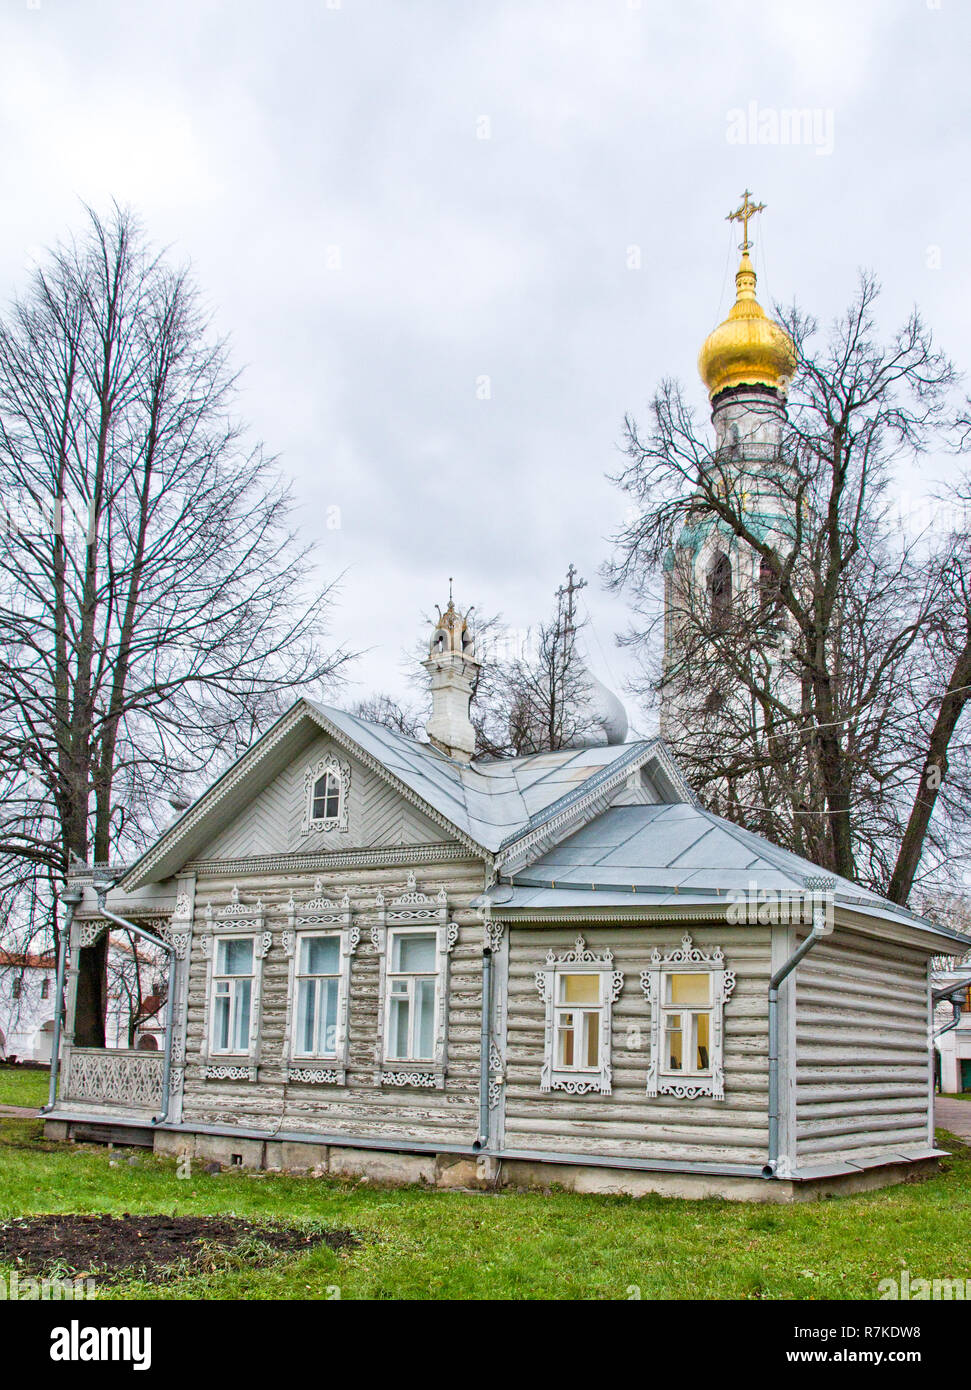 Vecchia casa in legno su un prato verde scolpito con windows. Chiesa in background. Il russo vecchia casa izba. Foto Stock